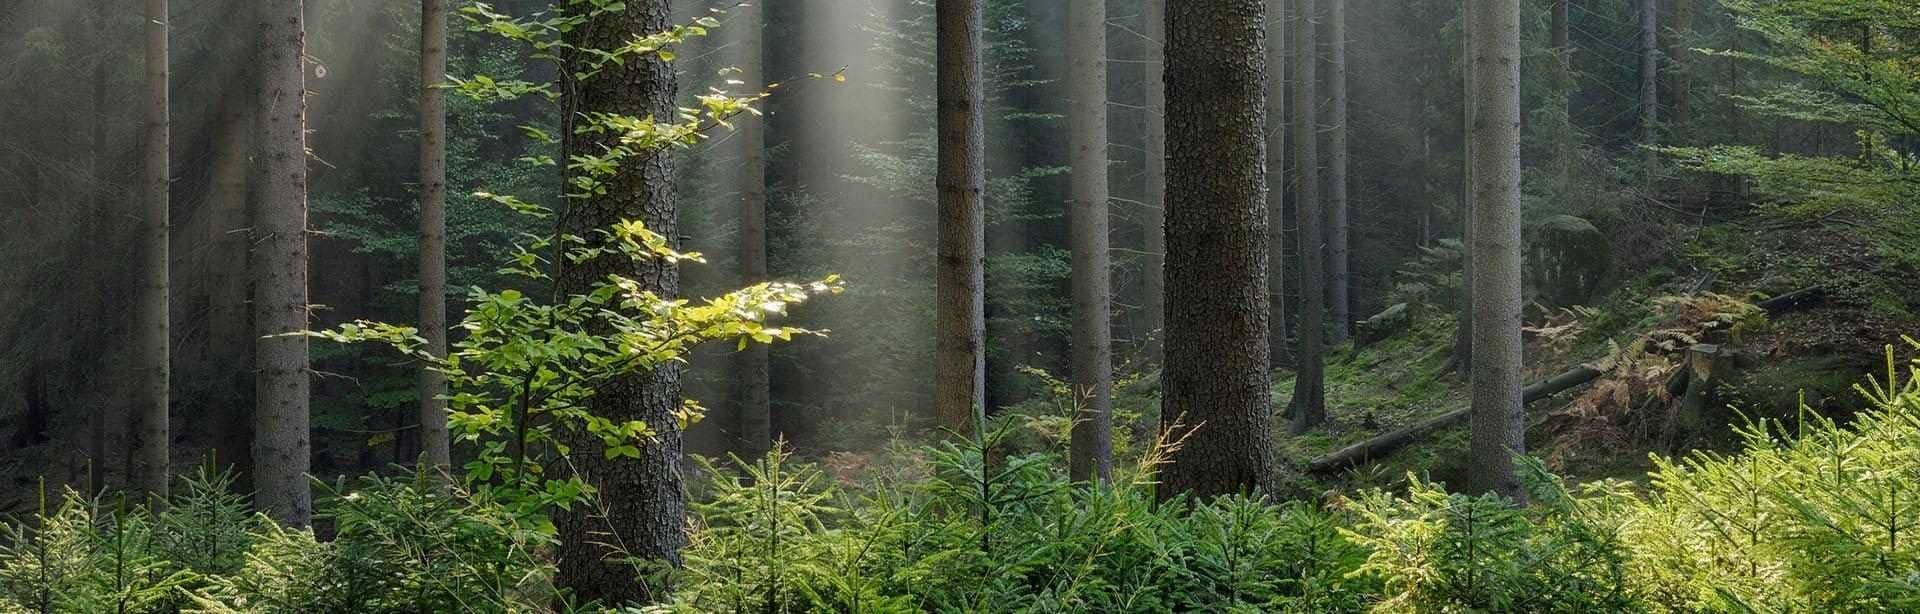 drzewa w lesie mieszanym